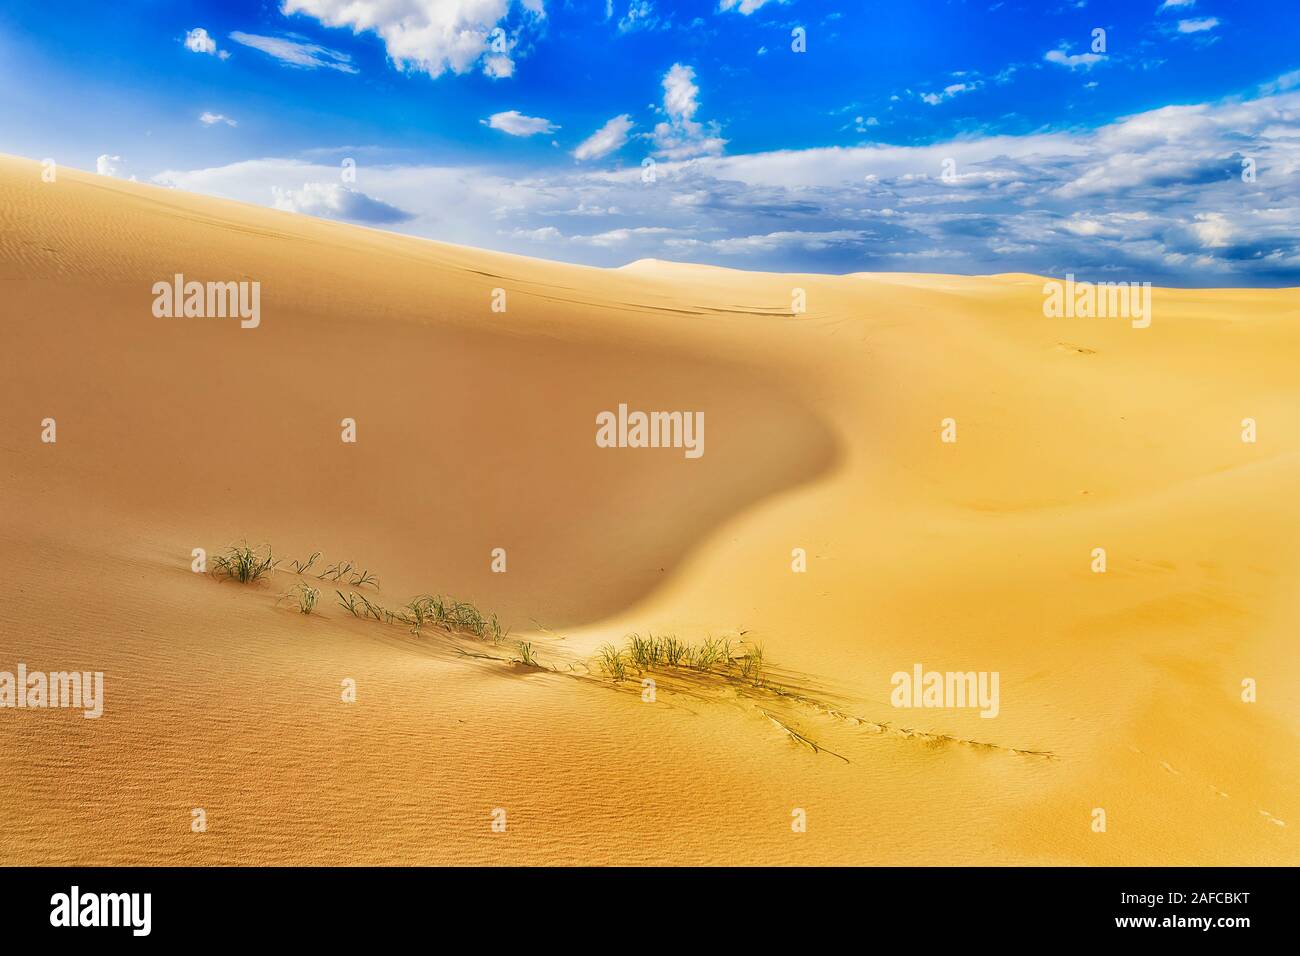 Schwache Gras wachsen durch Schichten von trockenem Sand in Sanddünen der Wüste an einem heißen Sommertag in Australien-Pazifik-Küste von Stockton Strand. Stockfoto